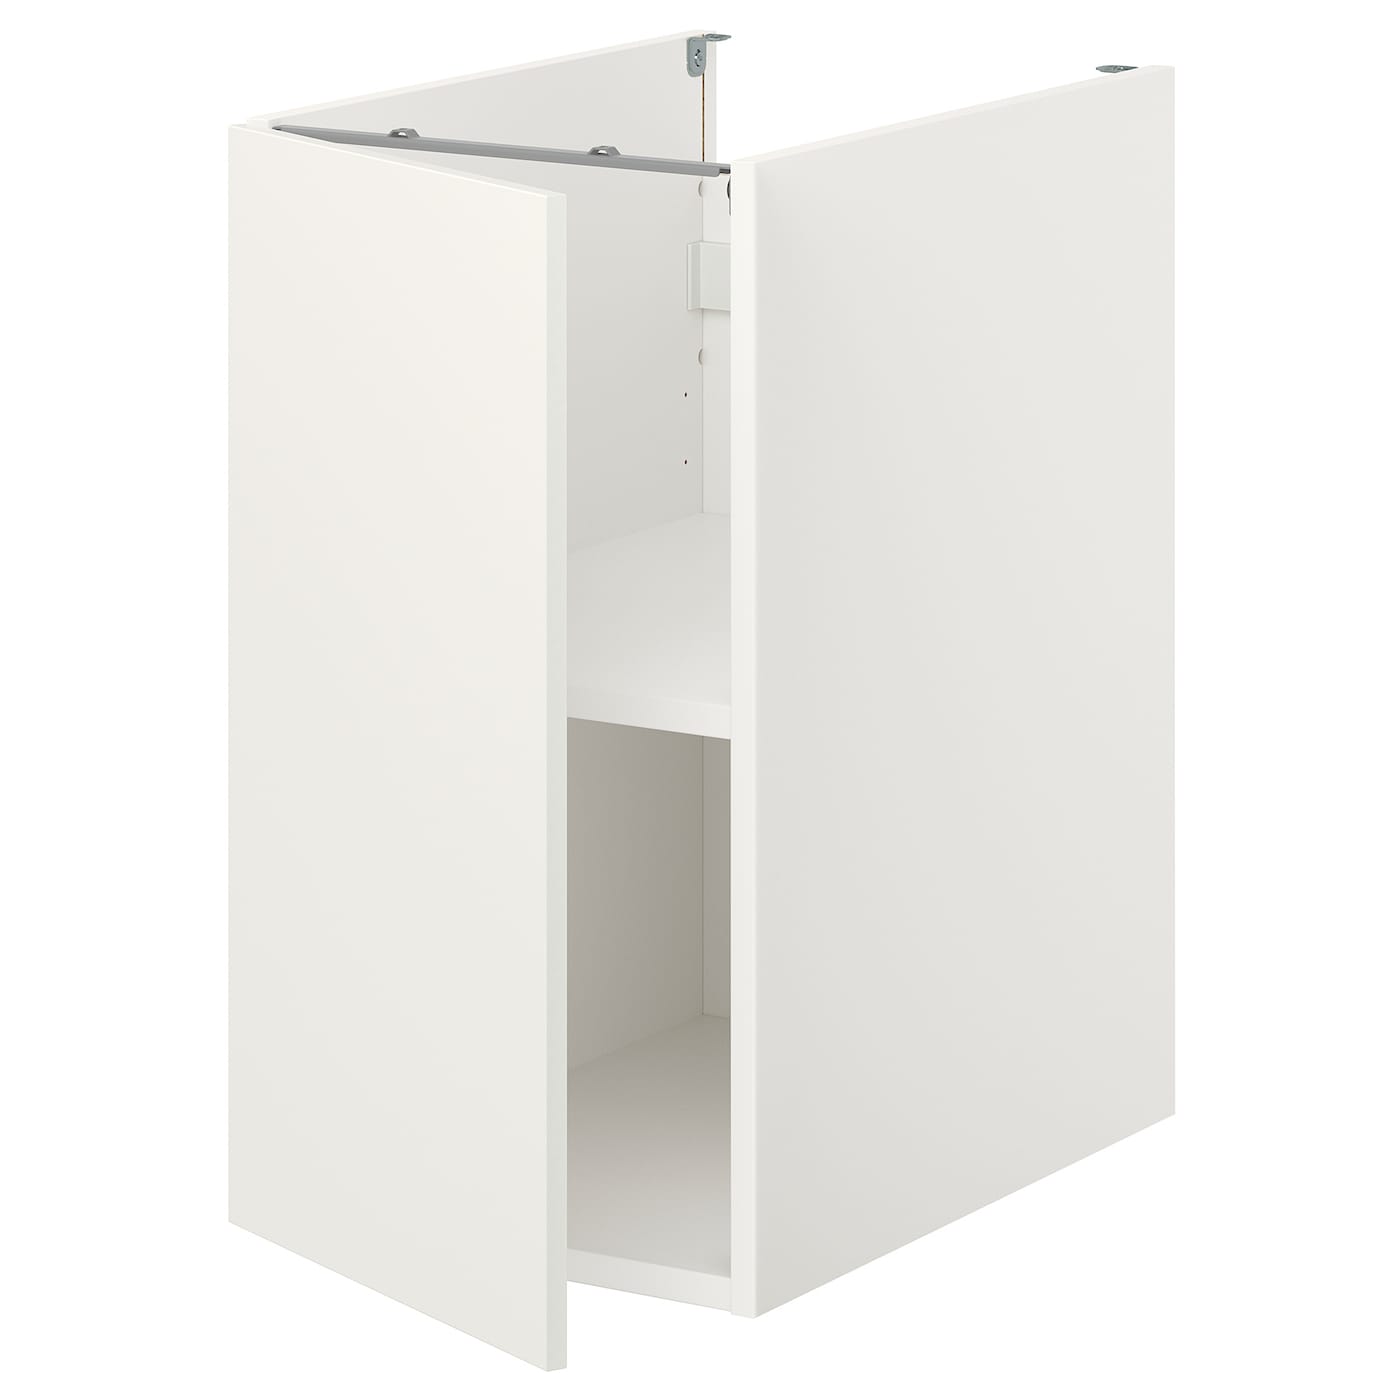 Напольный шкаф с дверцами - IKEA ENHET, 75x62x40см, белый, ЭХНЕТ ИКЕА